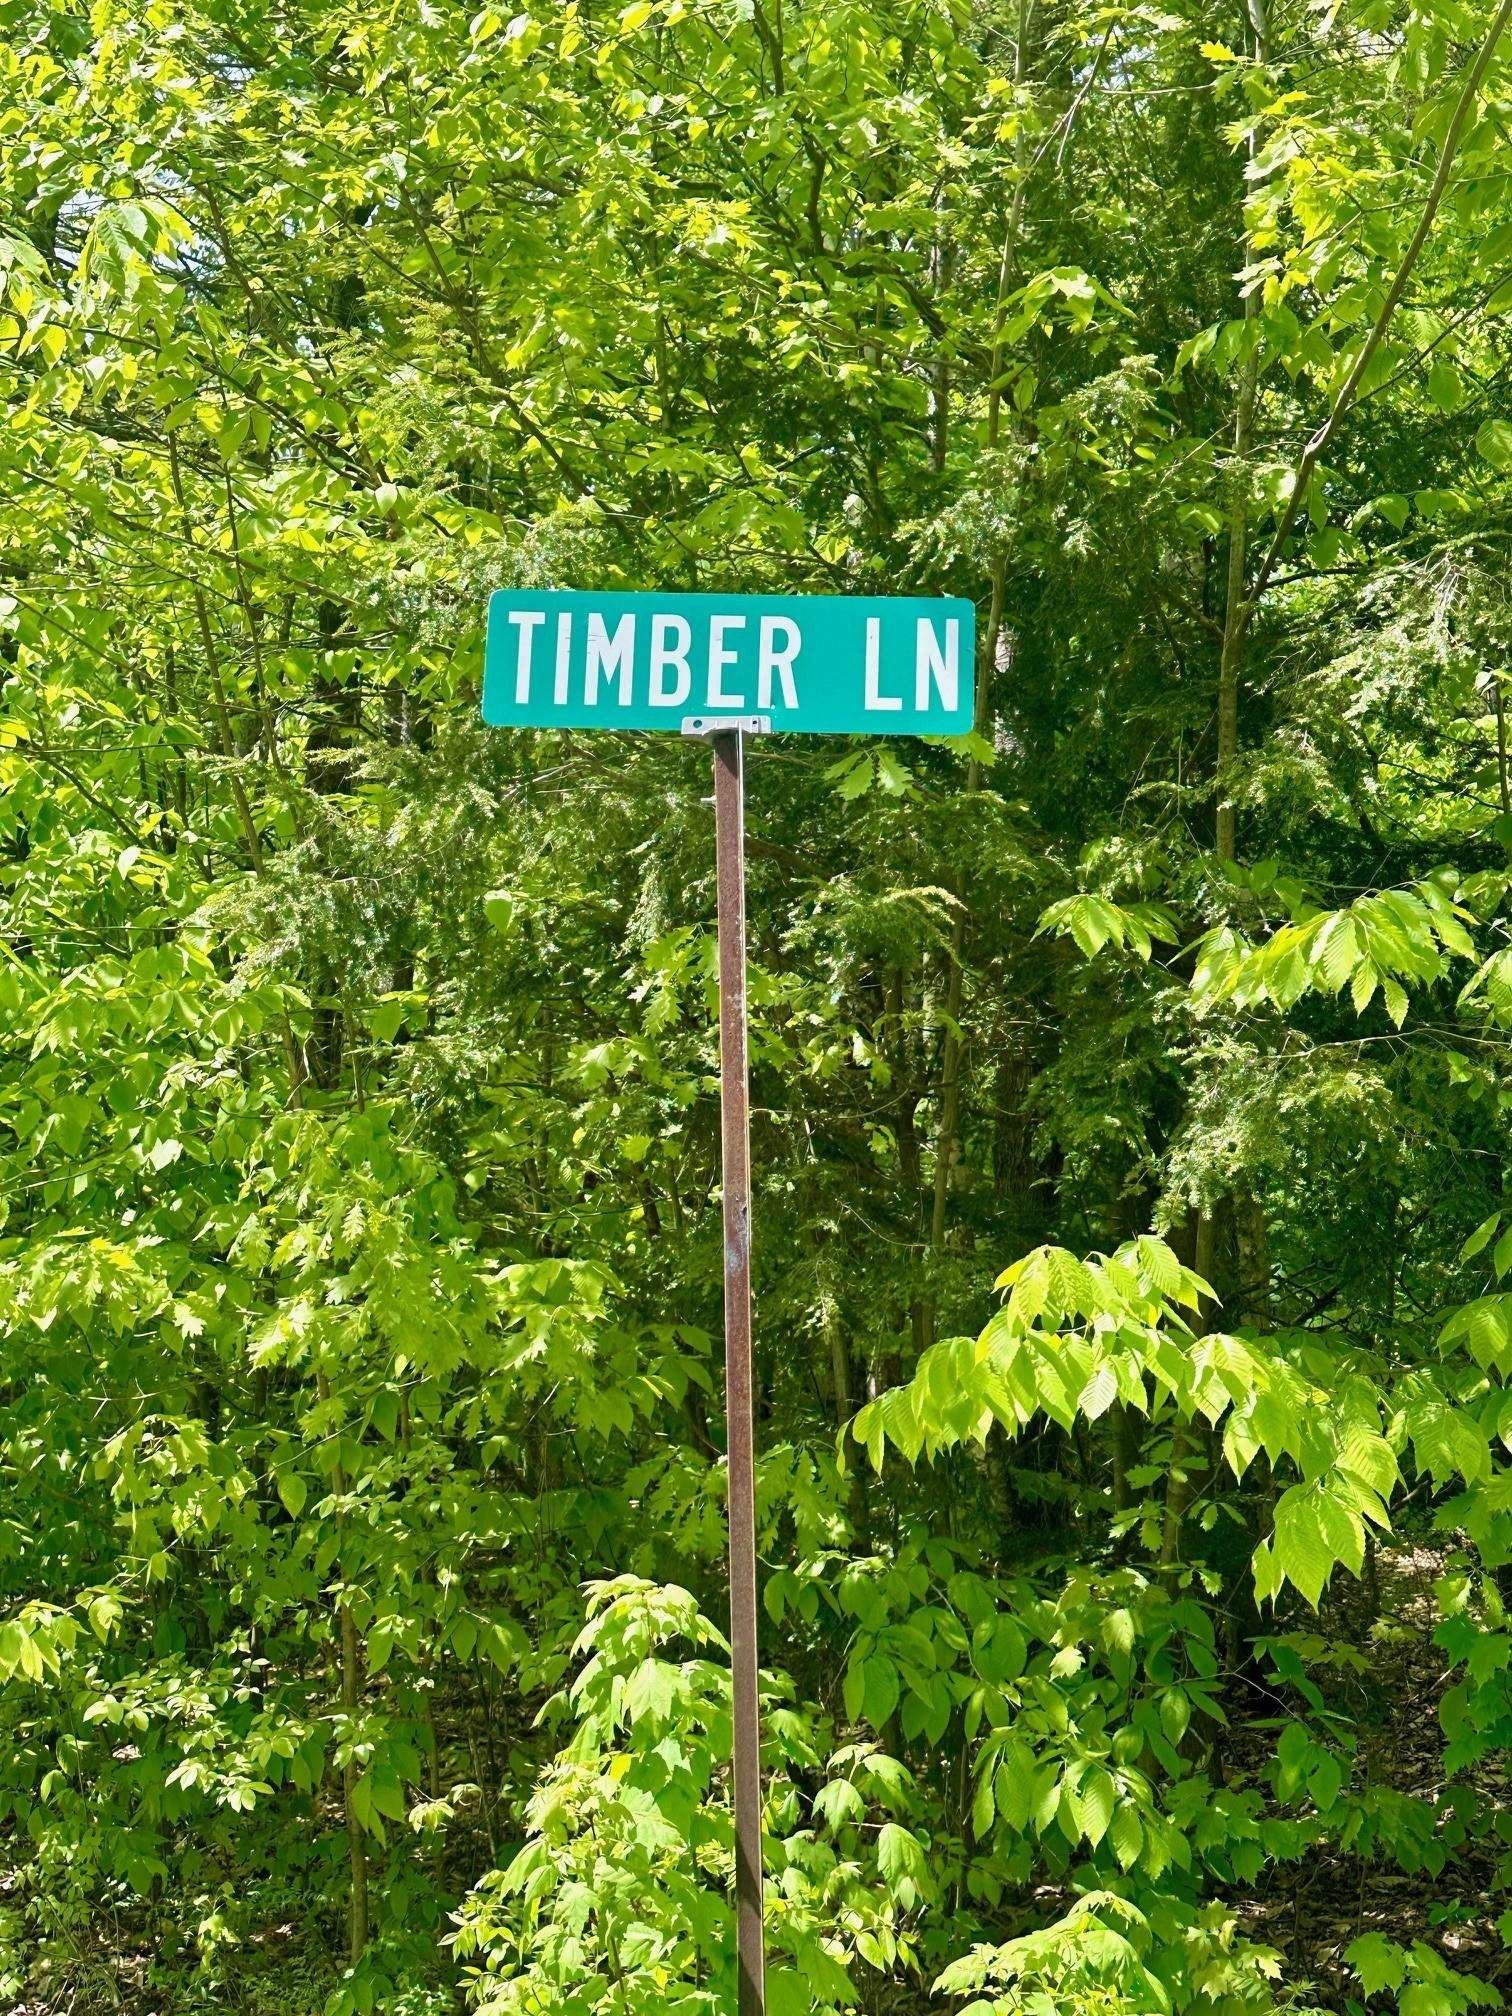 2. G6 Timber Lane